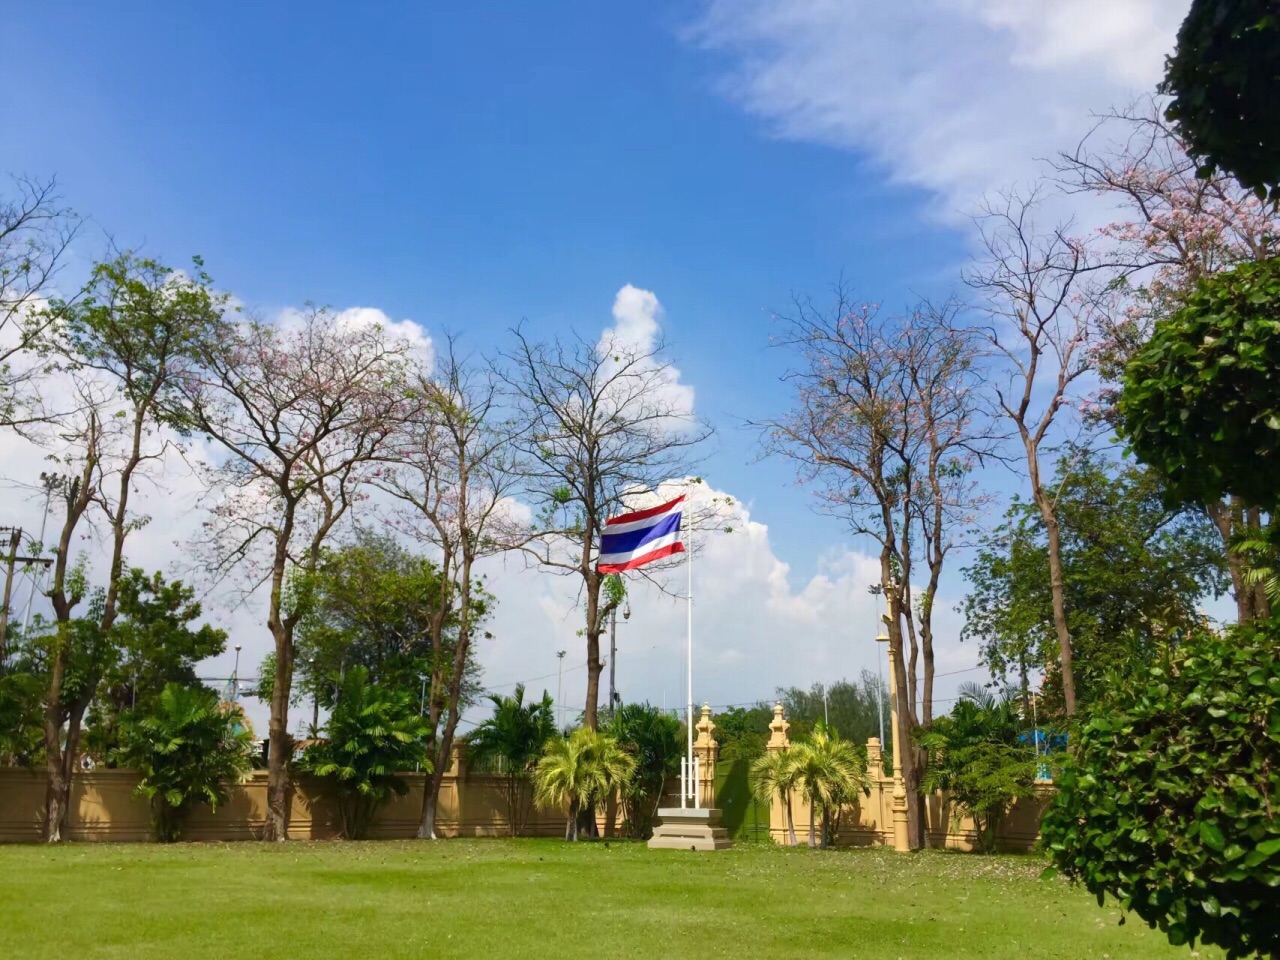 【携程攻略】清迈蒲屏皇宫景点,蒲屏皇宫，到此一游 ️ Aha！不愧是为泰国皇室的避暑行宫。 值得我…